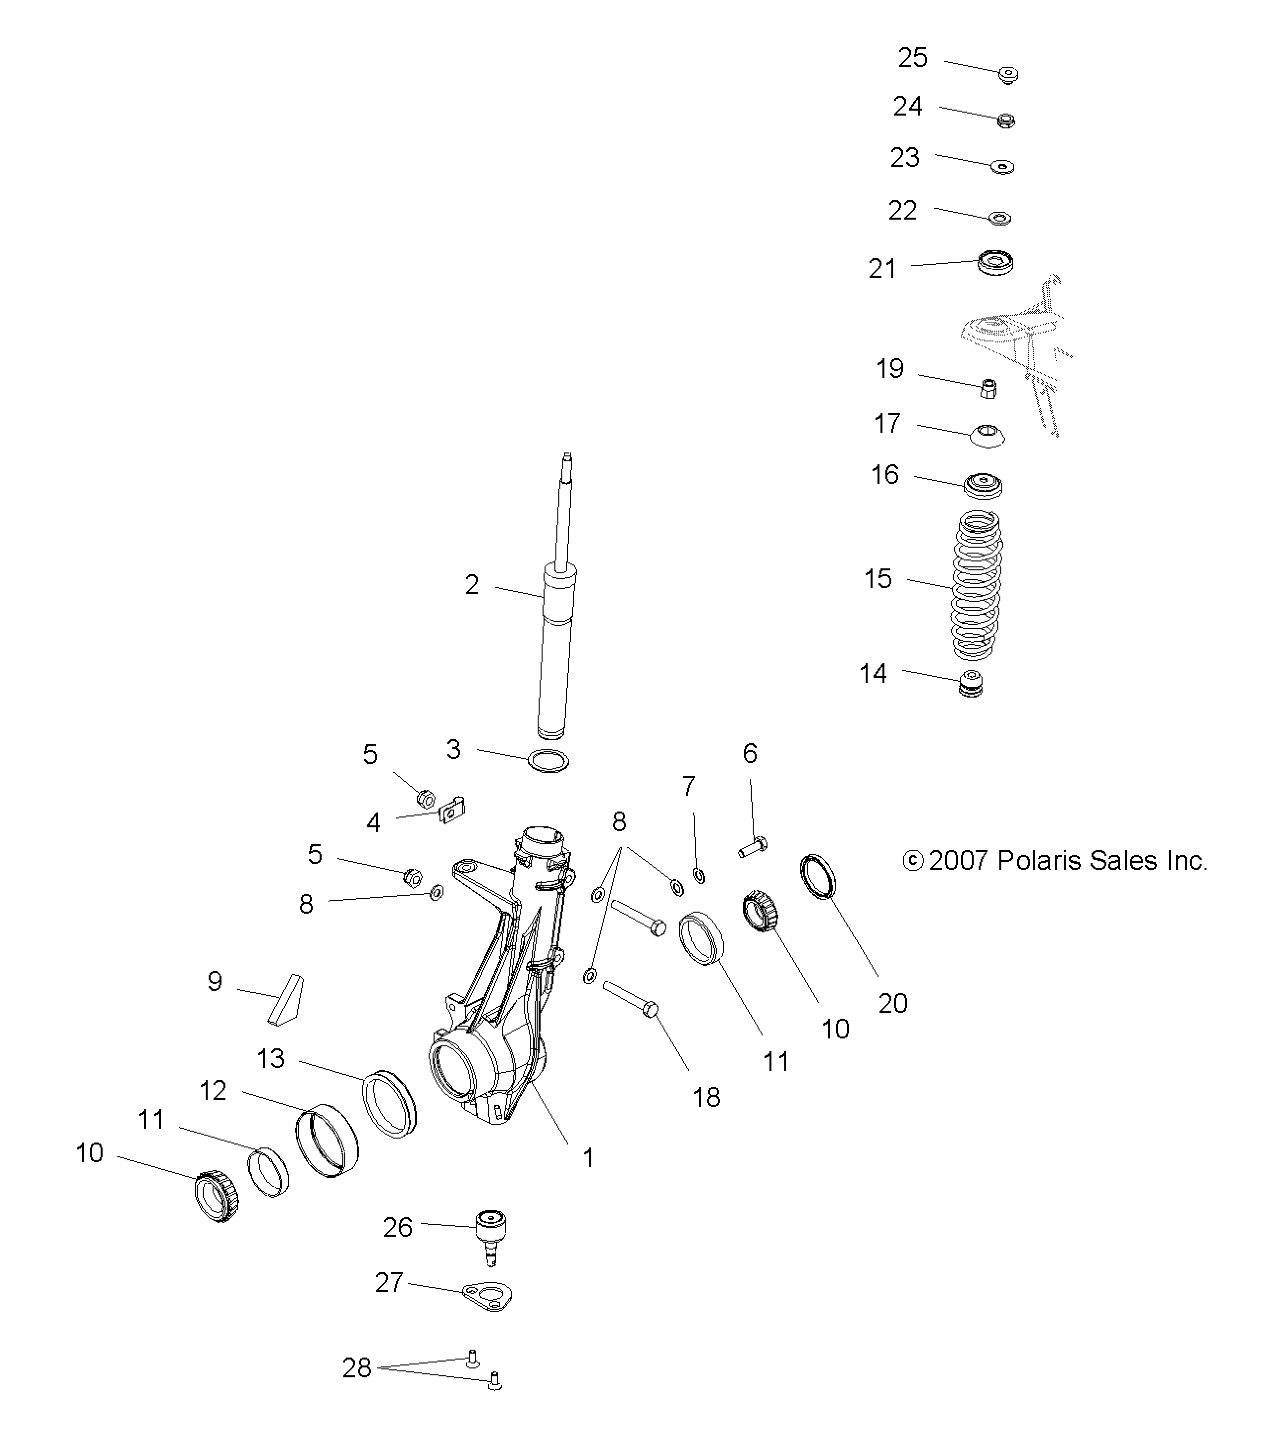 Foto diagrama Polaris que contem a peça 2410133